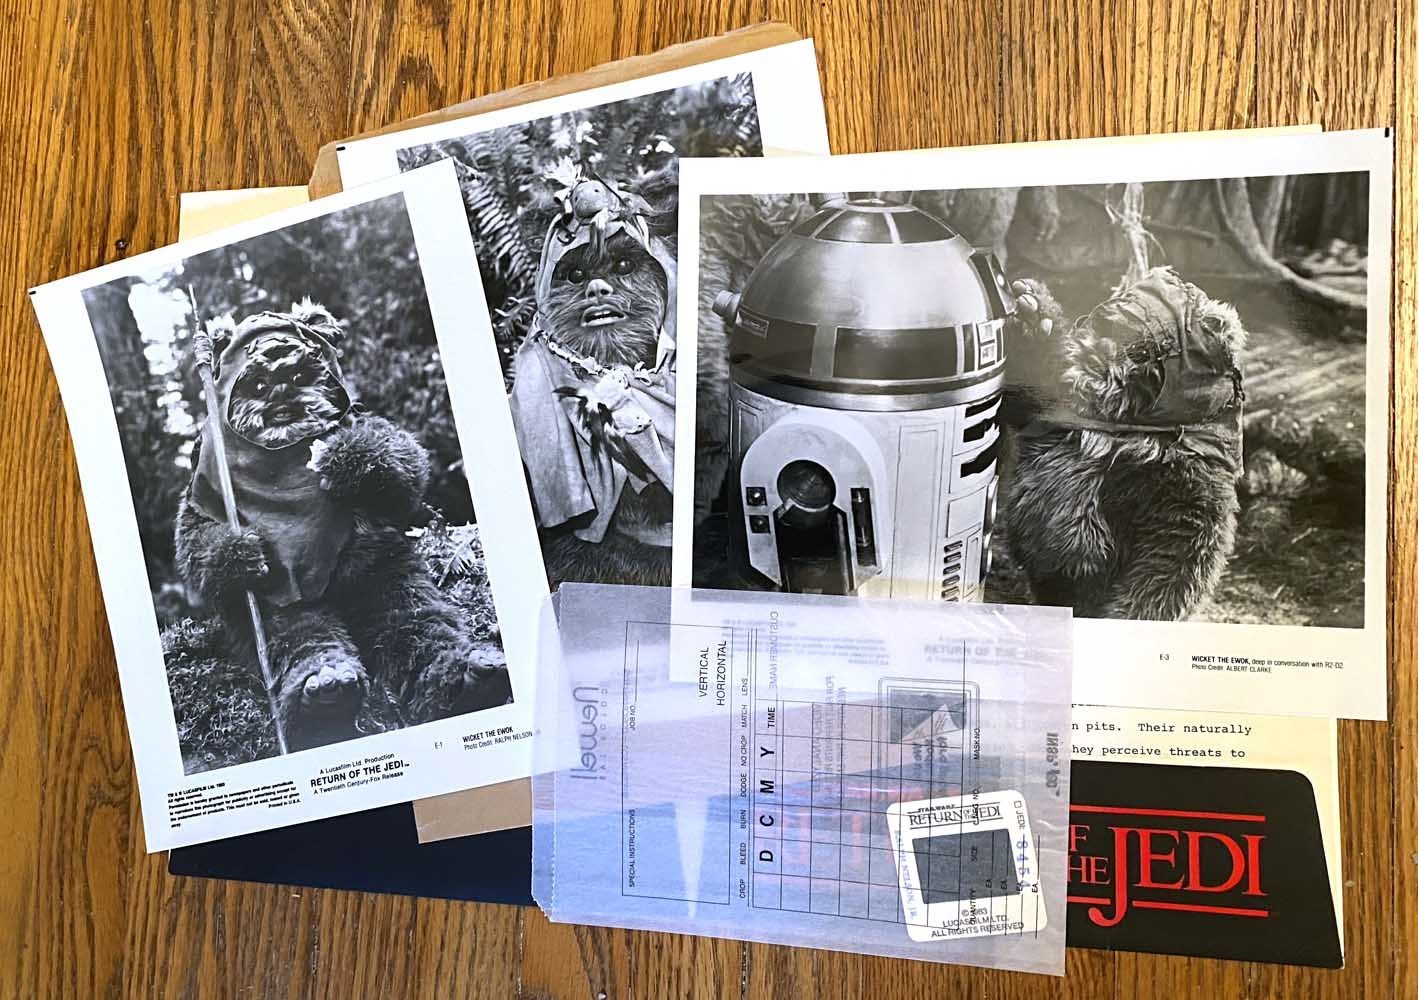 Star Wars INTRODUCING THE EWOKS press kit Return of the Jedi folder 35mm slide